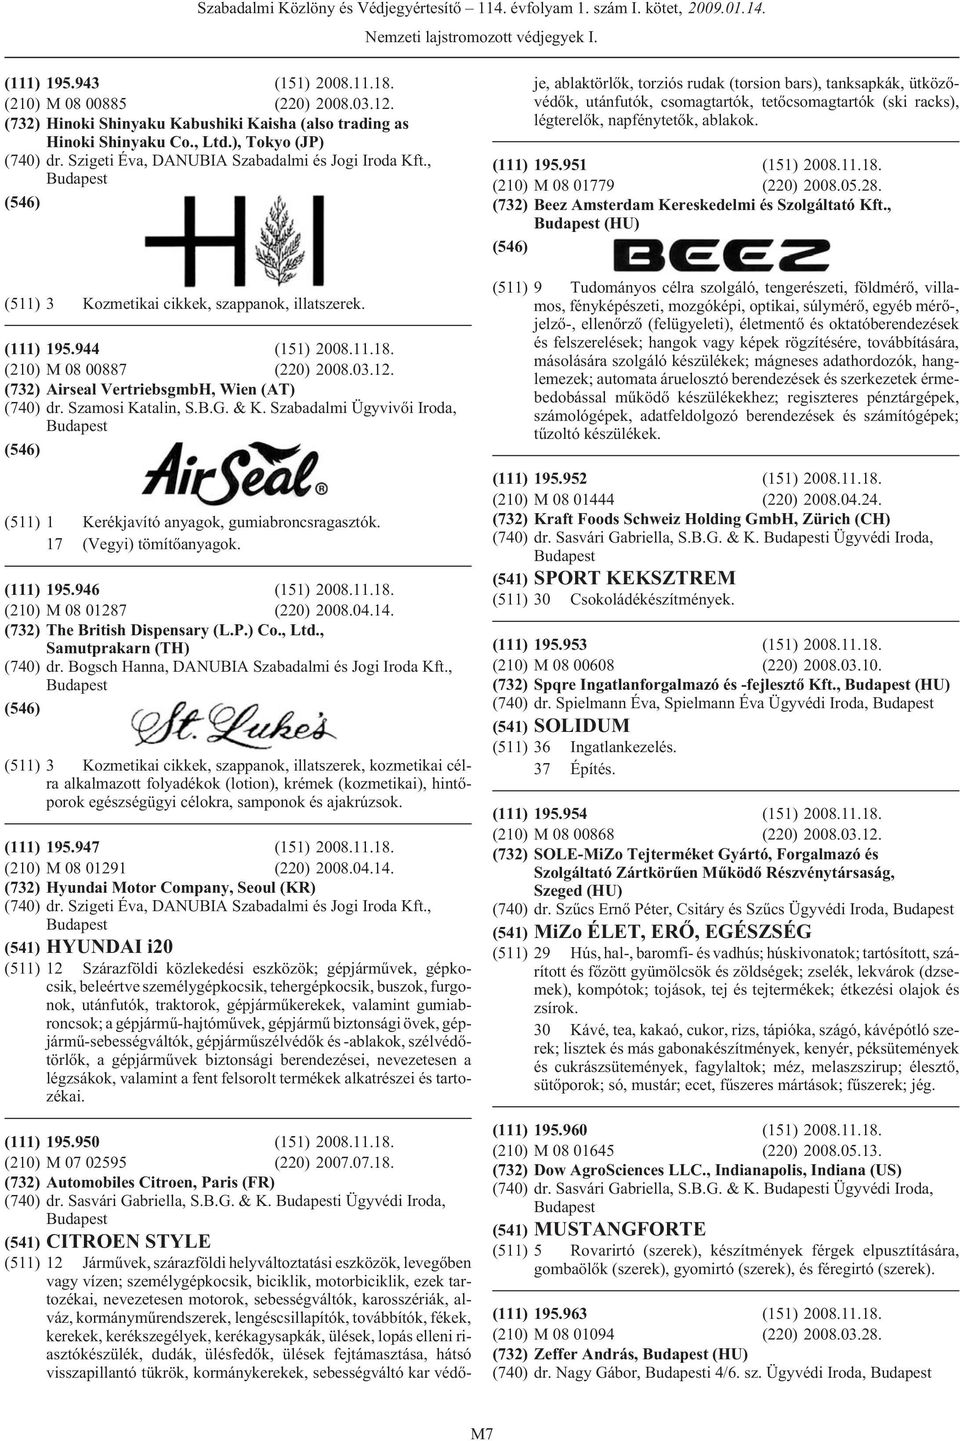 (732) Airseal VertriebsgmbH, Wien (AT) (740) dr. Szamosi Katalin, S.B.G. & K. Szabadalmi Ügyvivõi Iroda, (511) 1 Kerékjavító anyagok, gumiabroncsragasztók. 17 (Vegyi) tömítõanyagok. (111) 195.